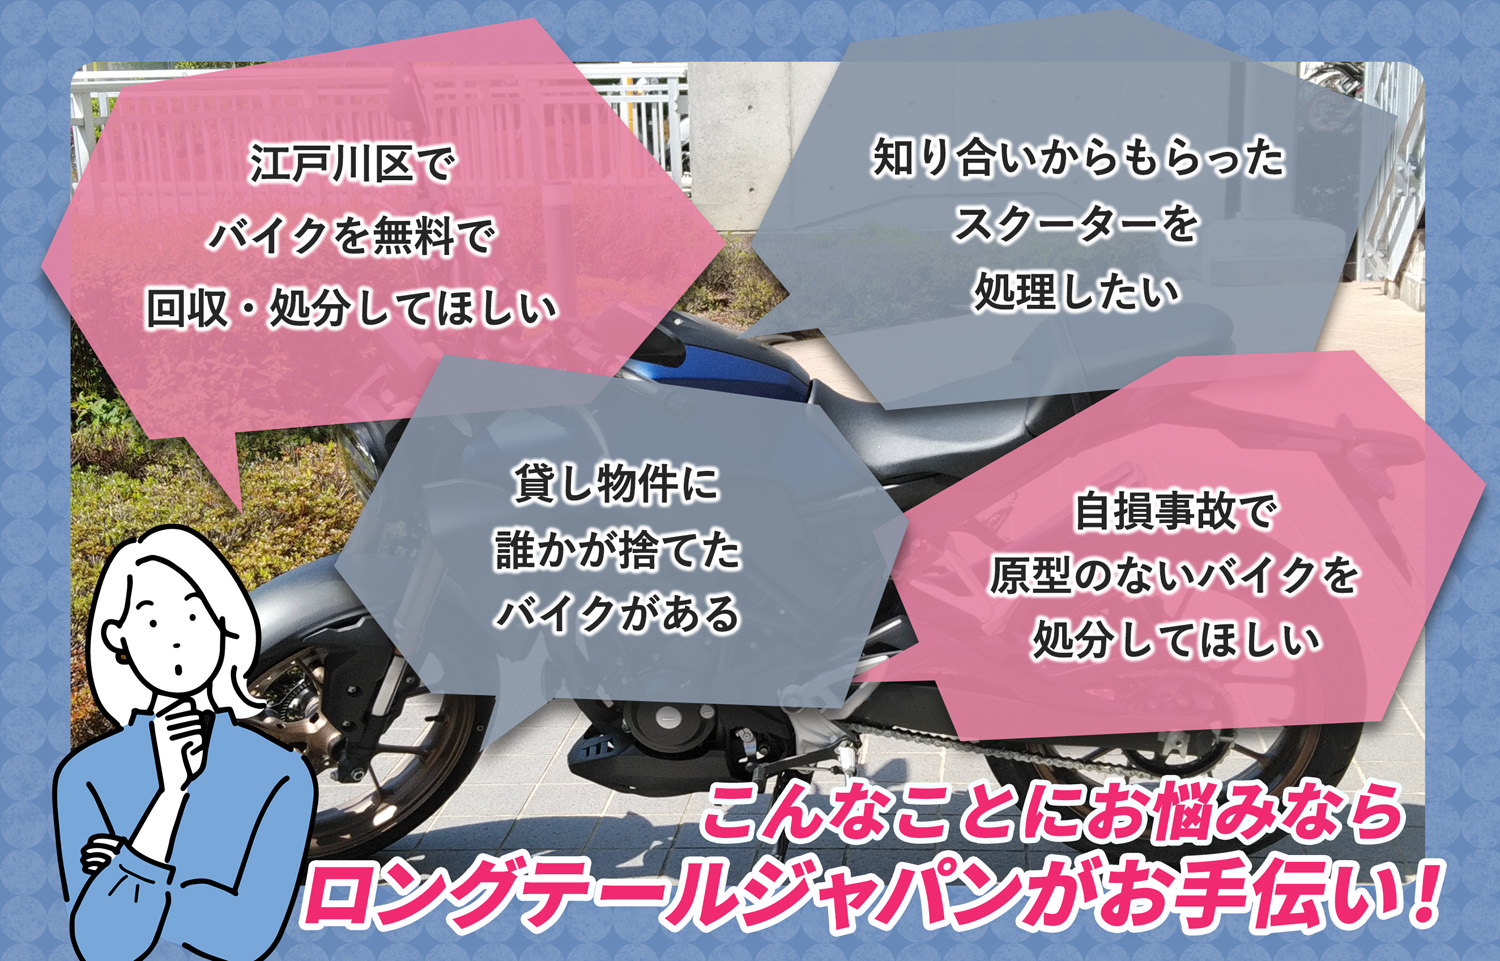 江戸川区でこんなバイクの処分にお困りでしたらバイク無料回収処分隊がお手伝いいたします。